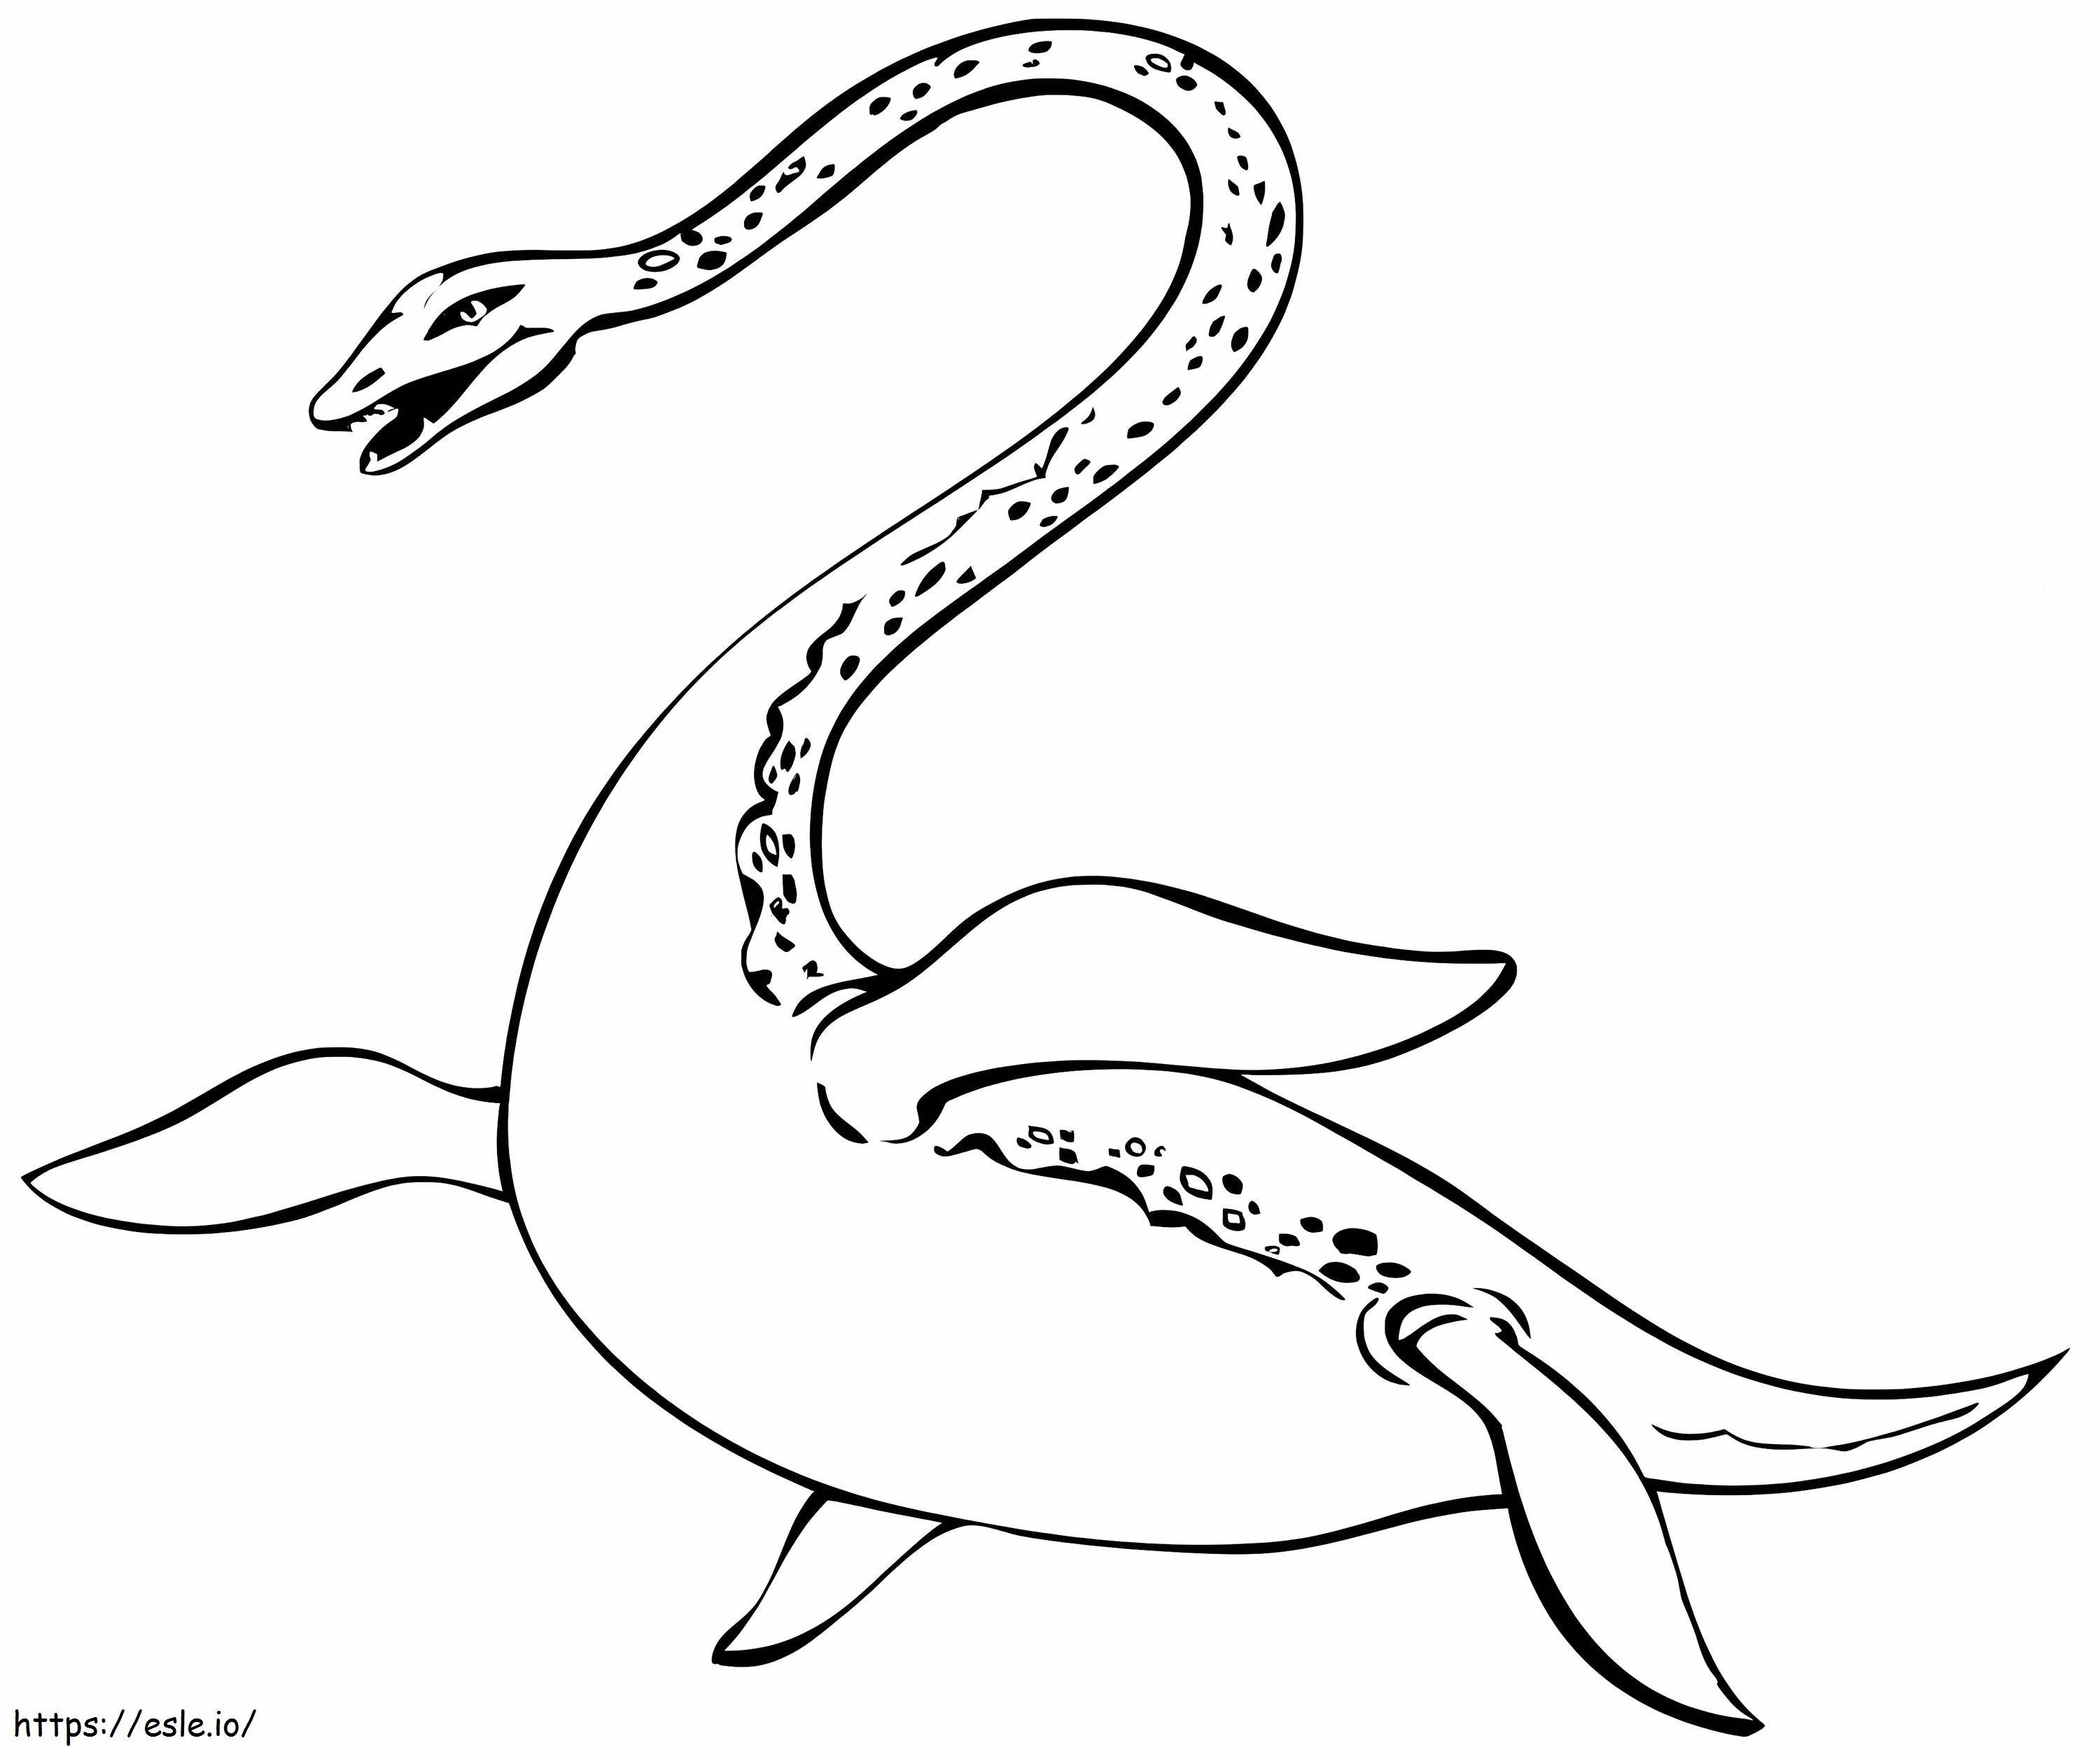 potwór z Loch Ness kolorowanka